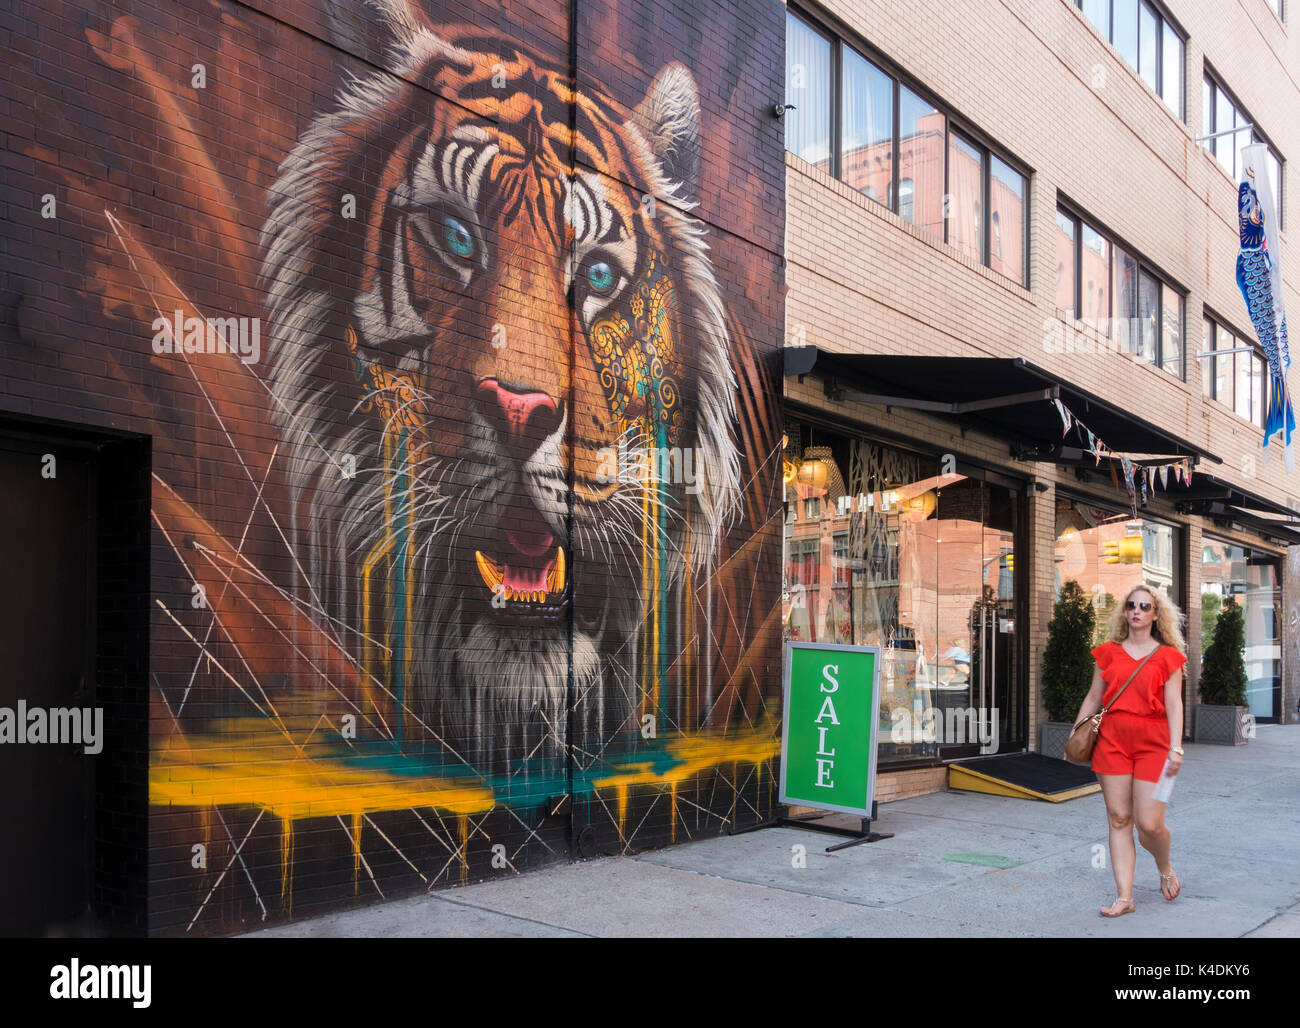 Una giovane turista che passa un'immagine gigante di una tigre su un muro a SoHo, un quartiere storico nella parte bassa di Manhattan Foto Stock